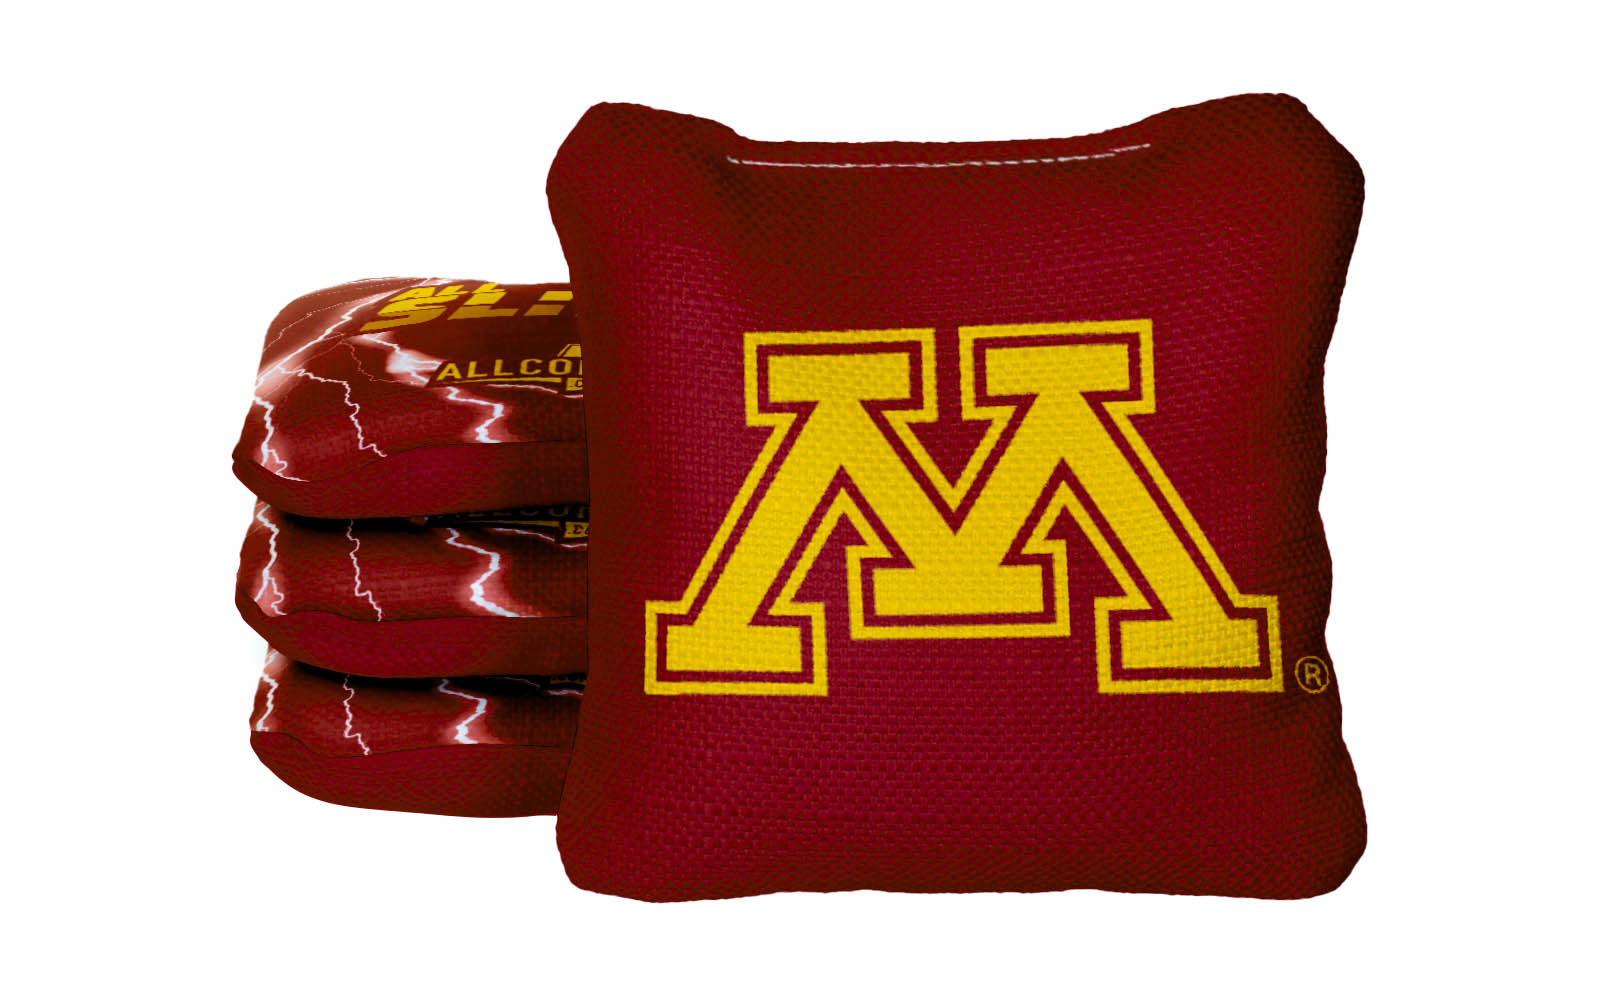 Officially Licensed Collegiate Cornhole Bags - AllCornhole All-Slide 2.0 - Set of 4 - University of Minnesota